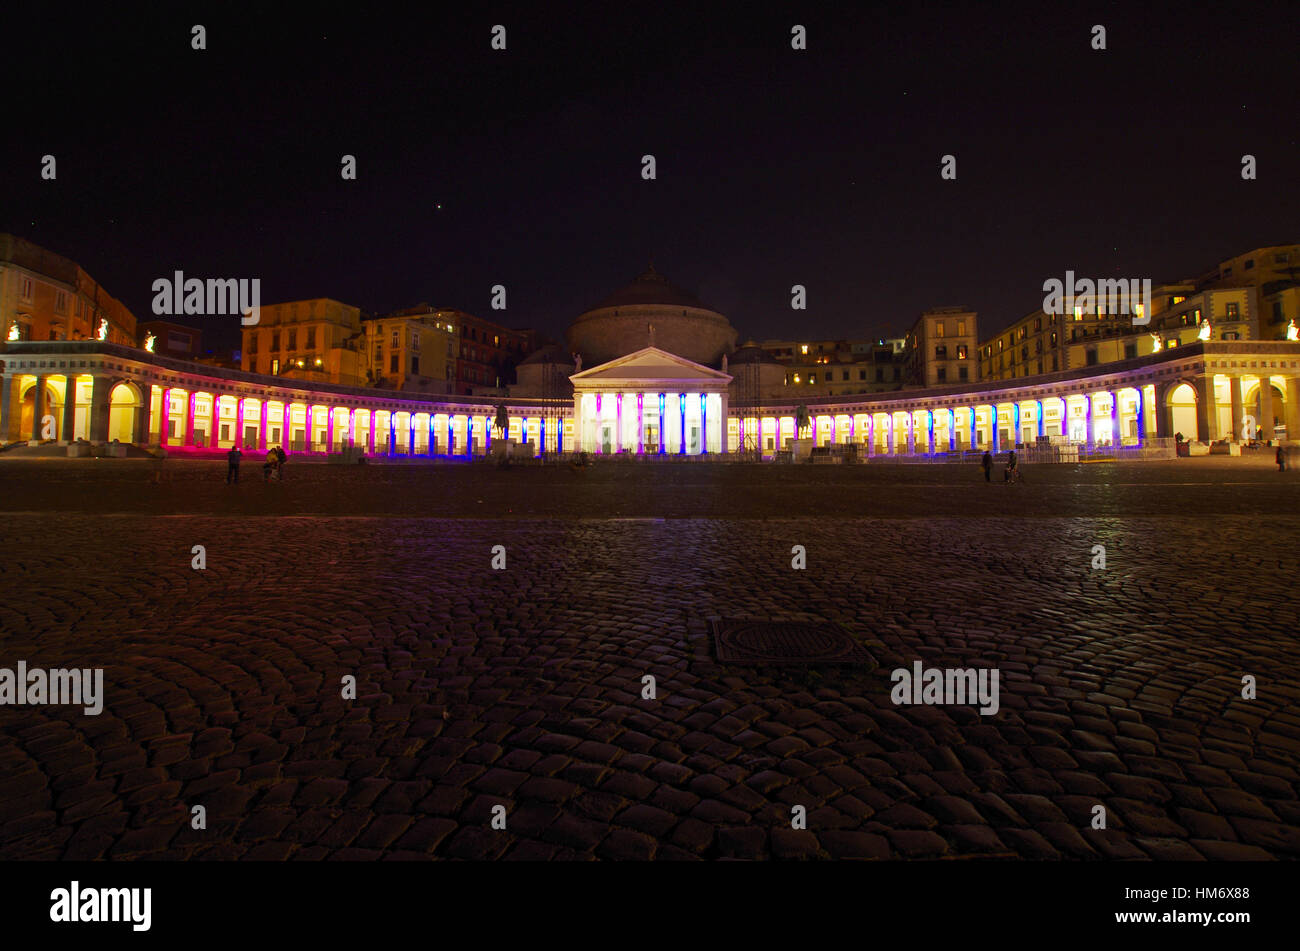 NAPLES,IL - 26 décembre 2016 - Vue de la Piazza del Plebiscito, la nuit, avec des spectacles de lumière. Banque D'Images